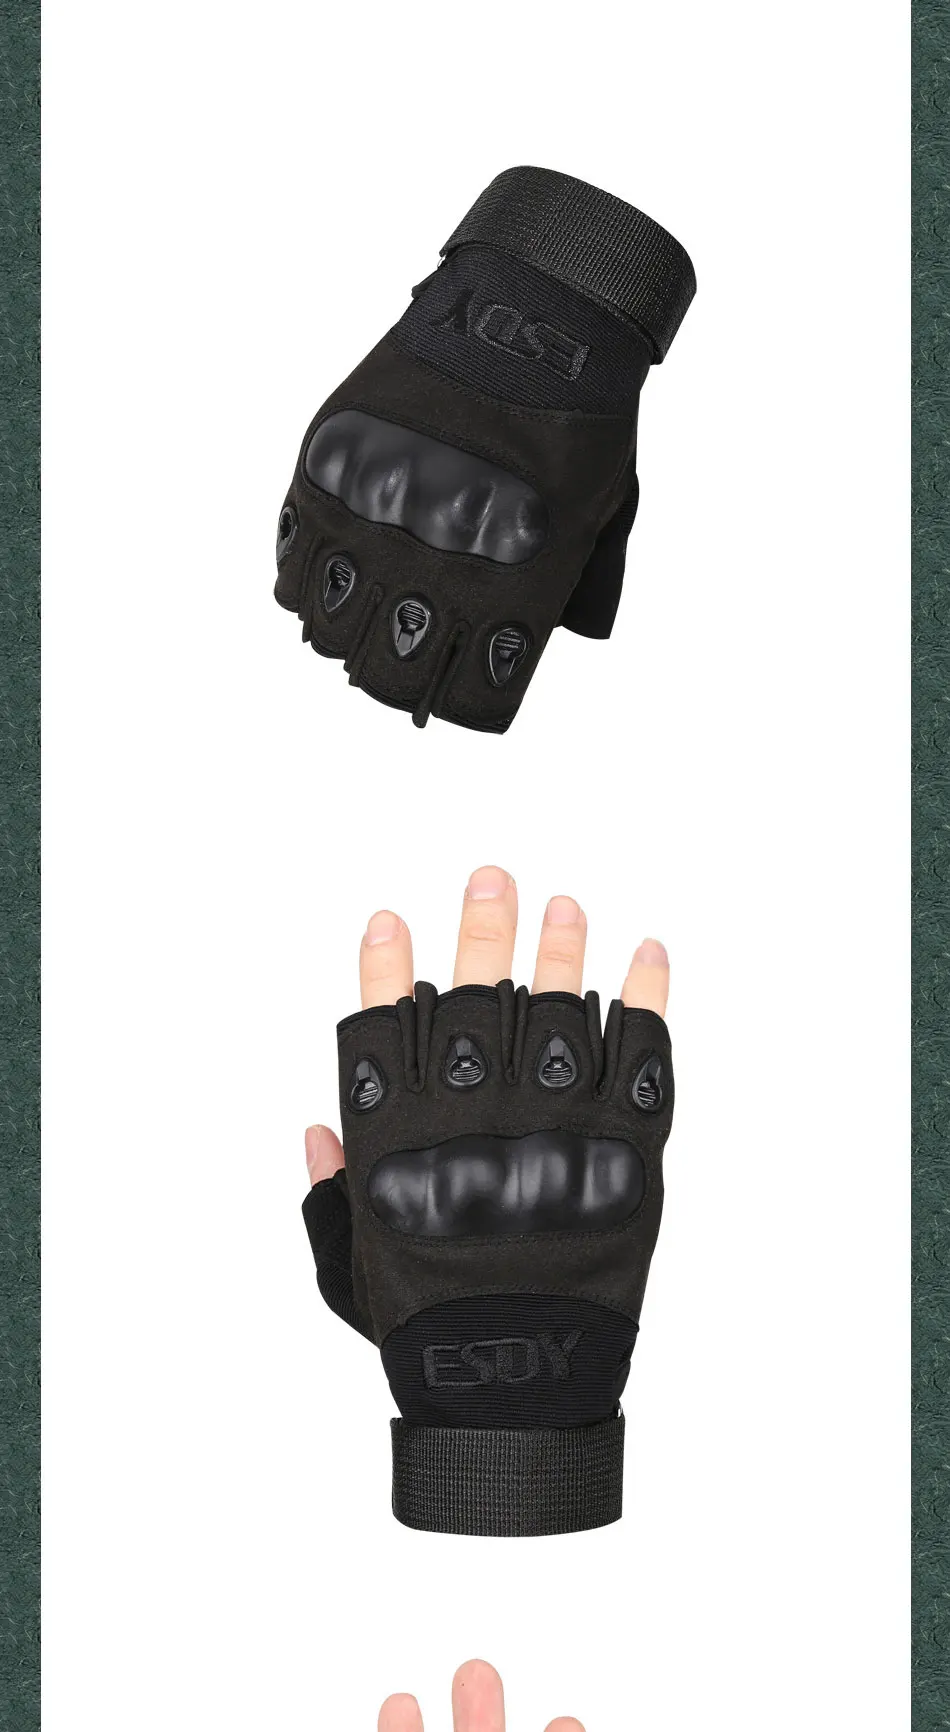 Горячая бренд ESDY Открытый Тактический Кемпинг Туризм Спорт карго износостойкие Велоспорт боевой Бой перчатки без пальцев для мужчин